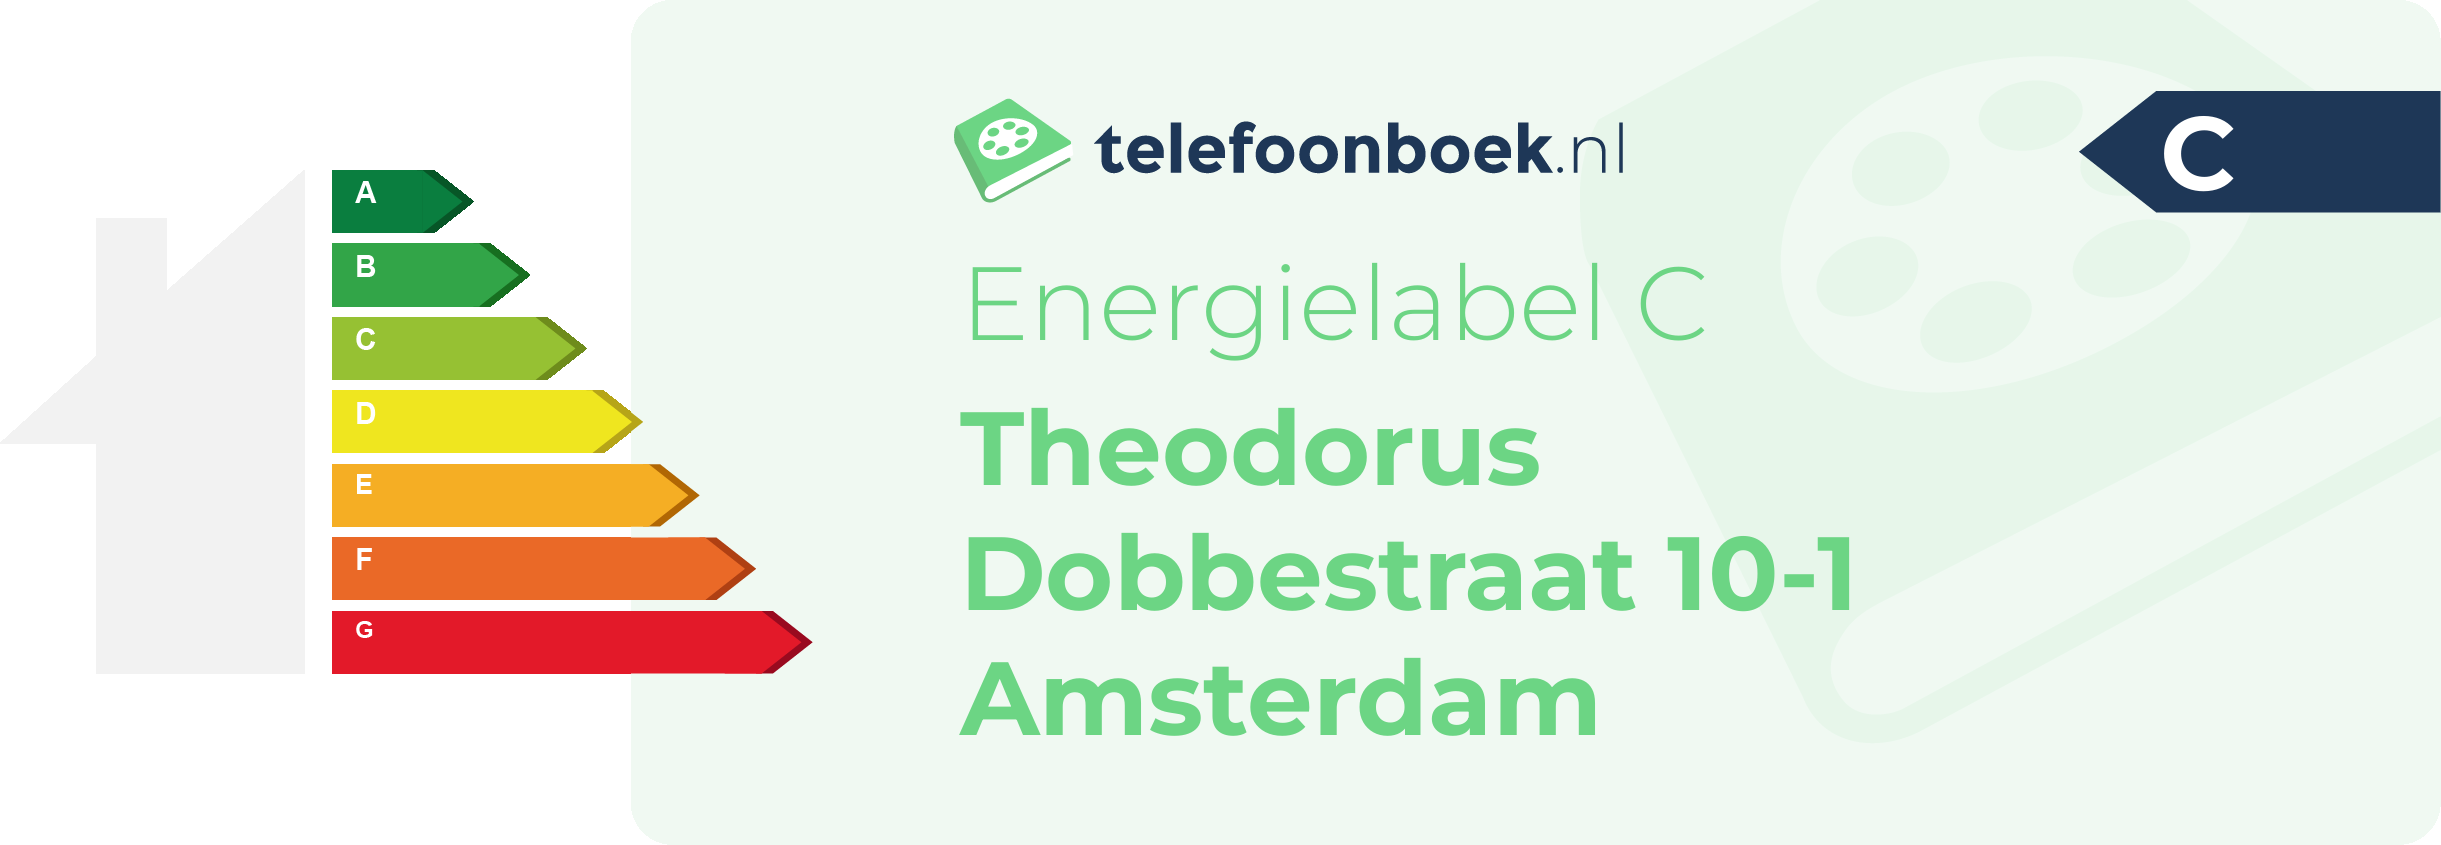 Energielabel Theodorus Dobbestraat 10-1 Amsterdam